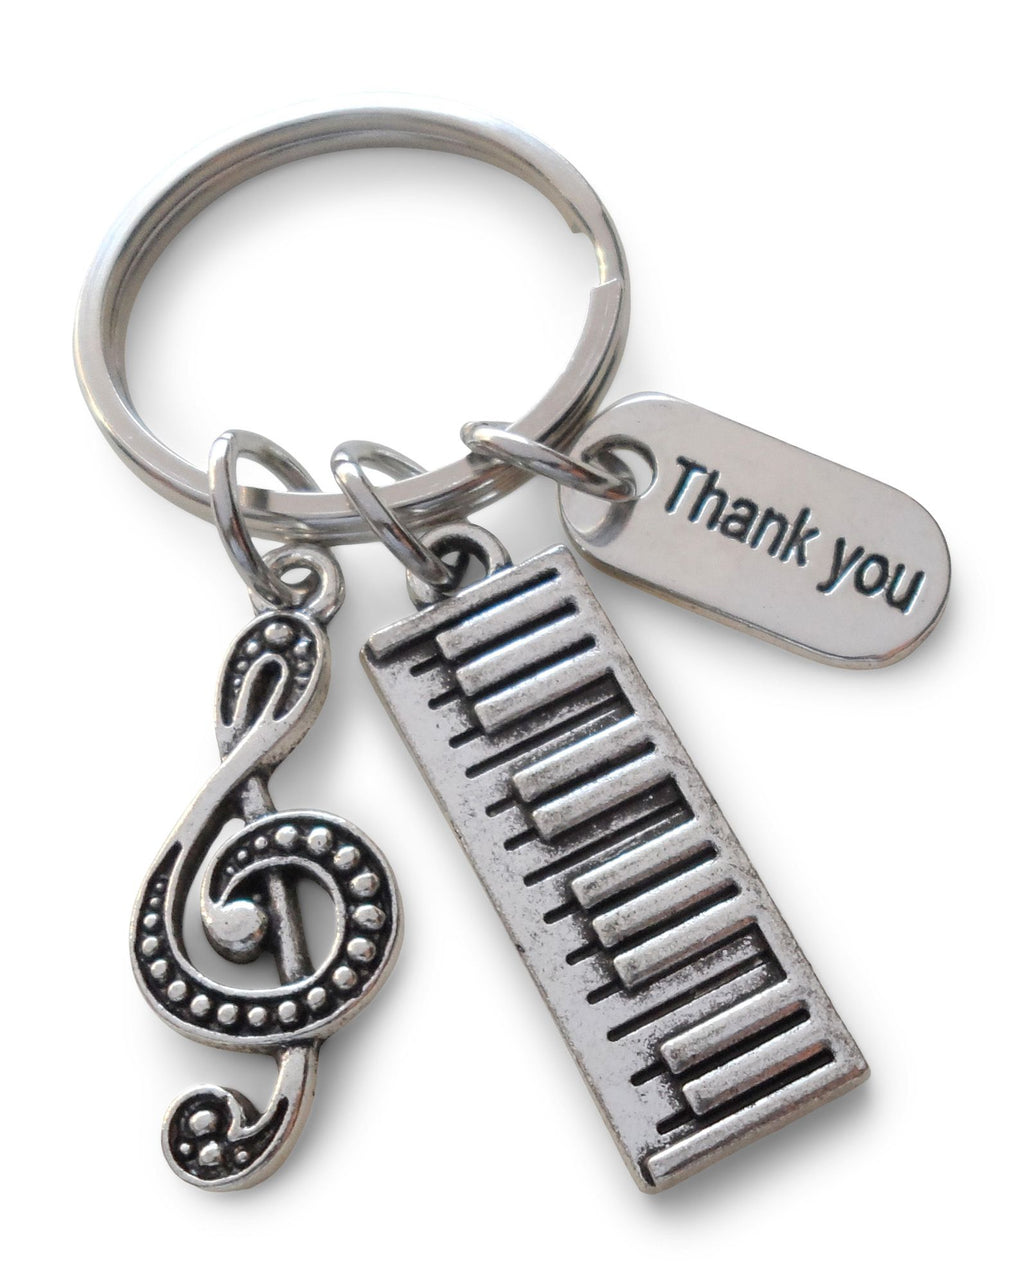 Piano Teacher Keychain; Piano Keyboard Charm, Treble Clef & Thank You Charm Keychain, Music Teacher Appreciation Keychain